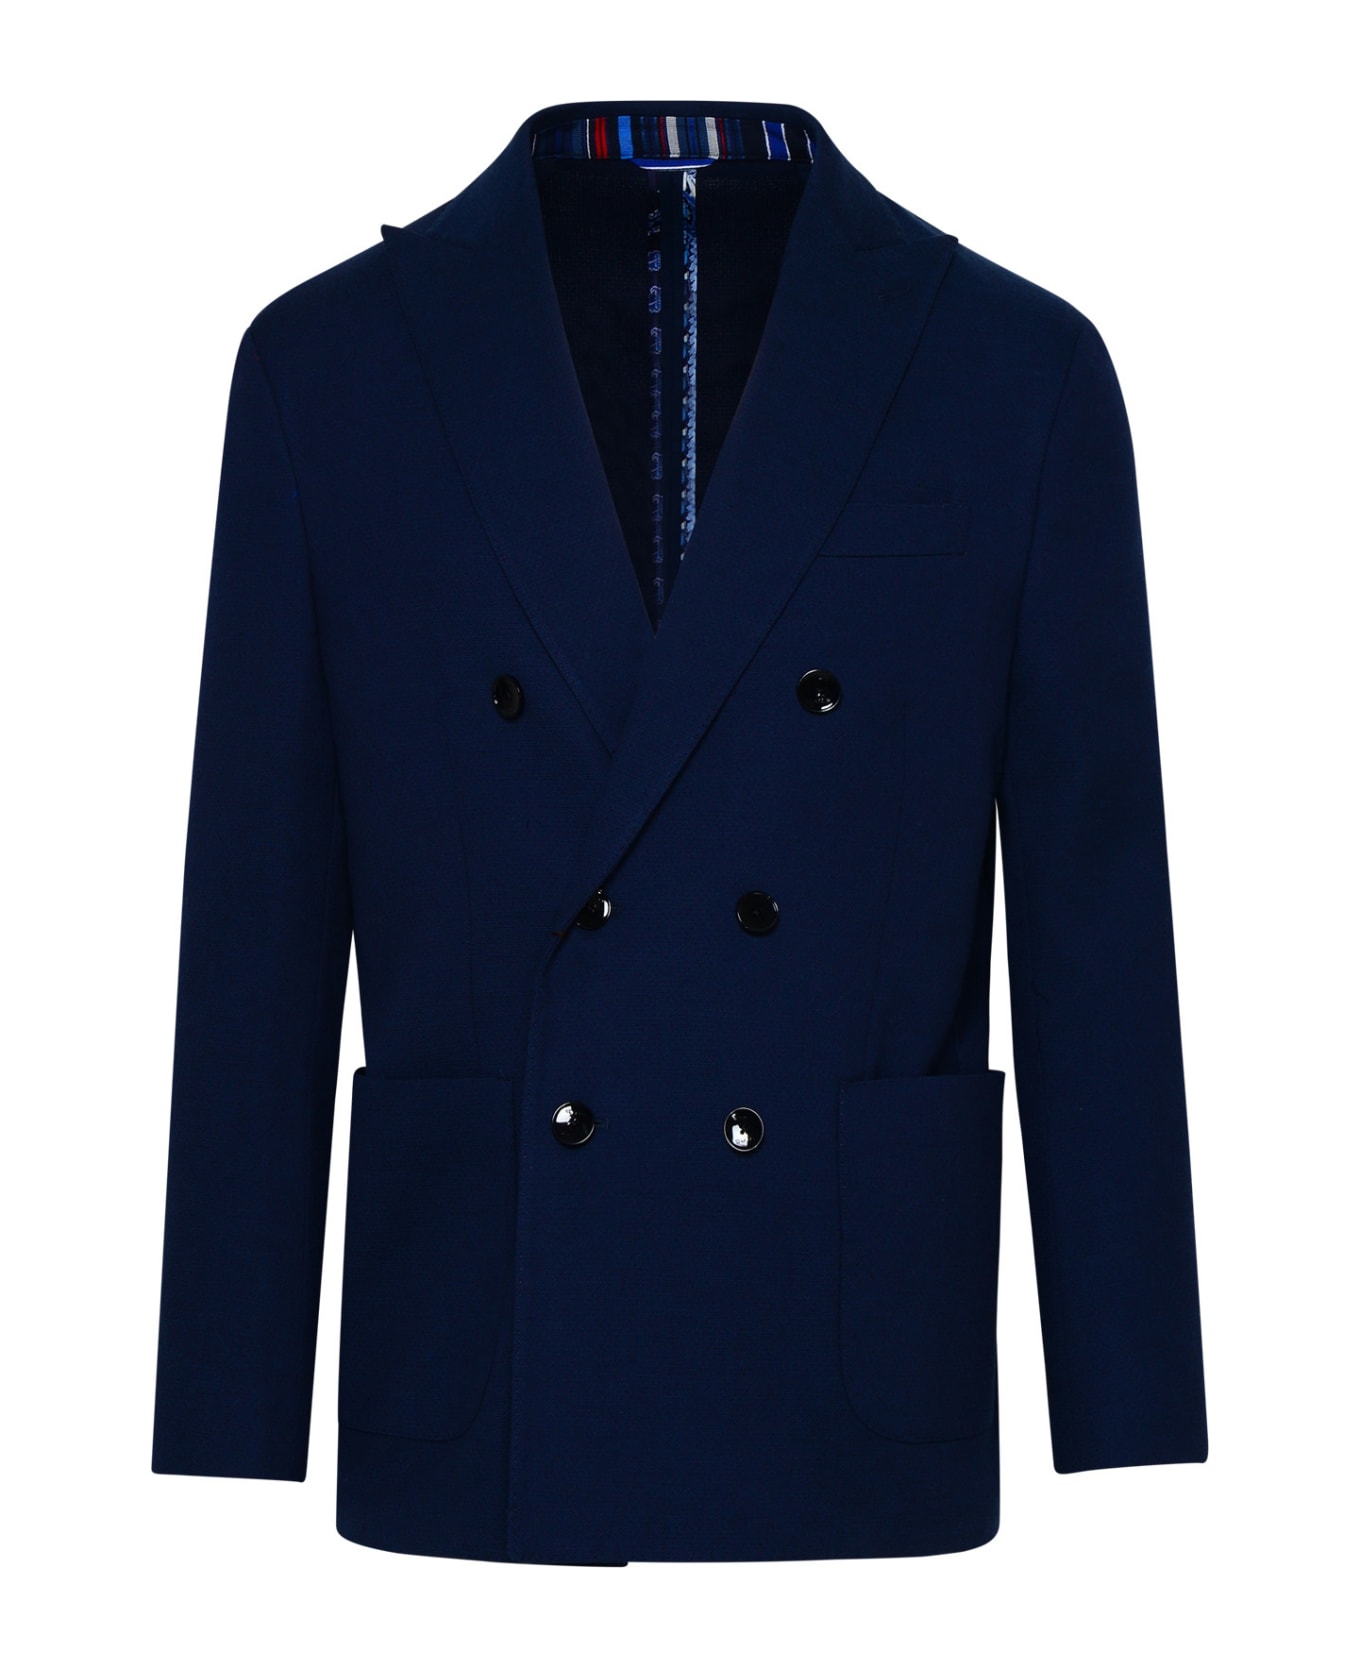 Etro Blue Cotton Blend Blazer Jacket - Blue